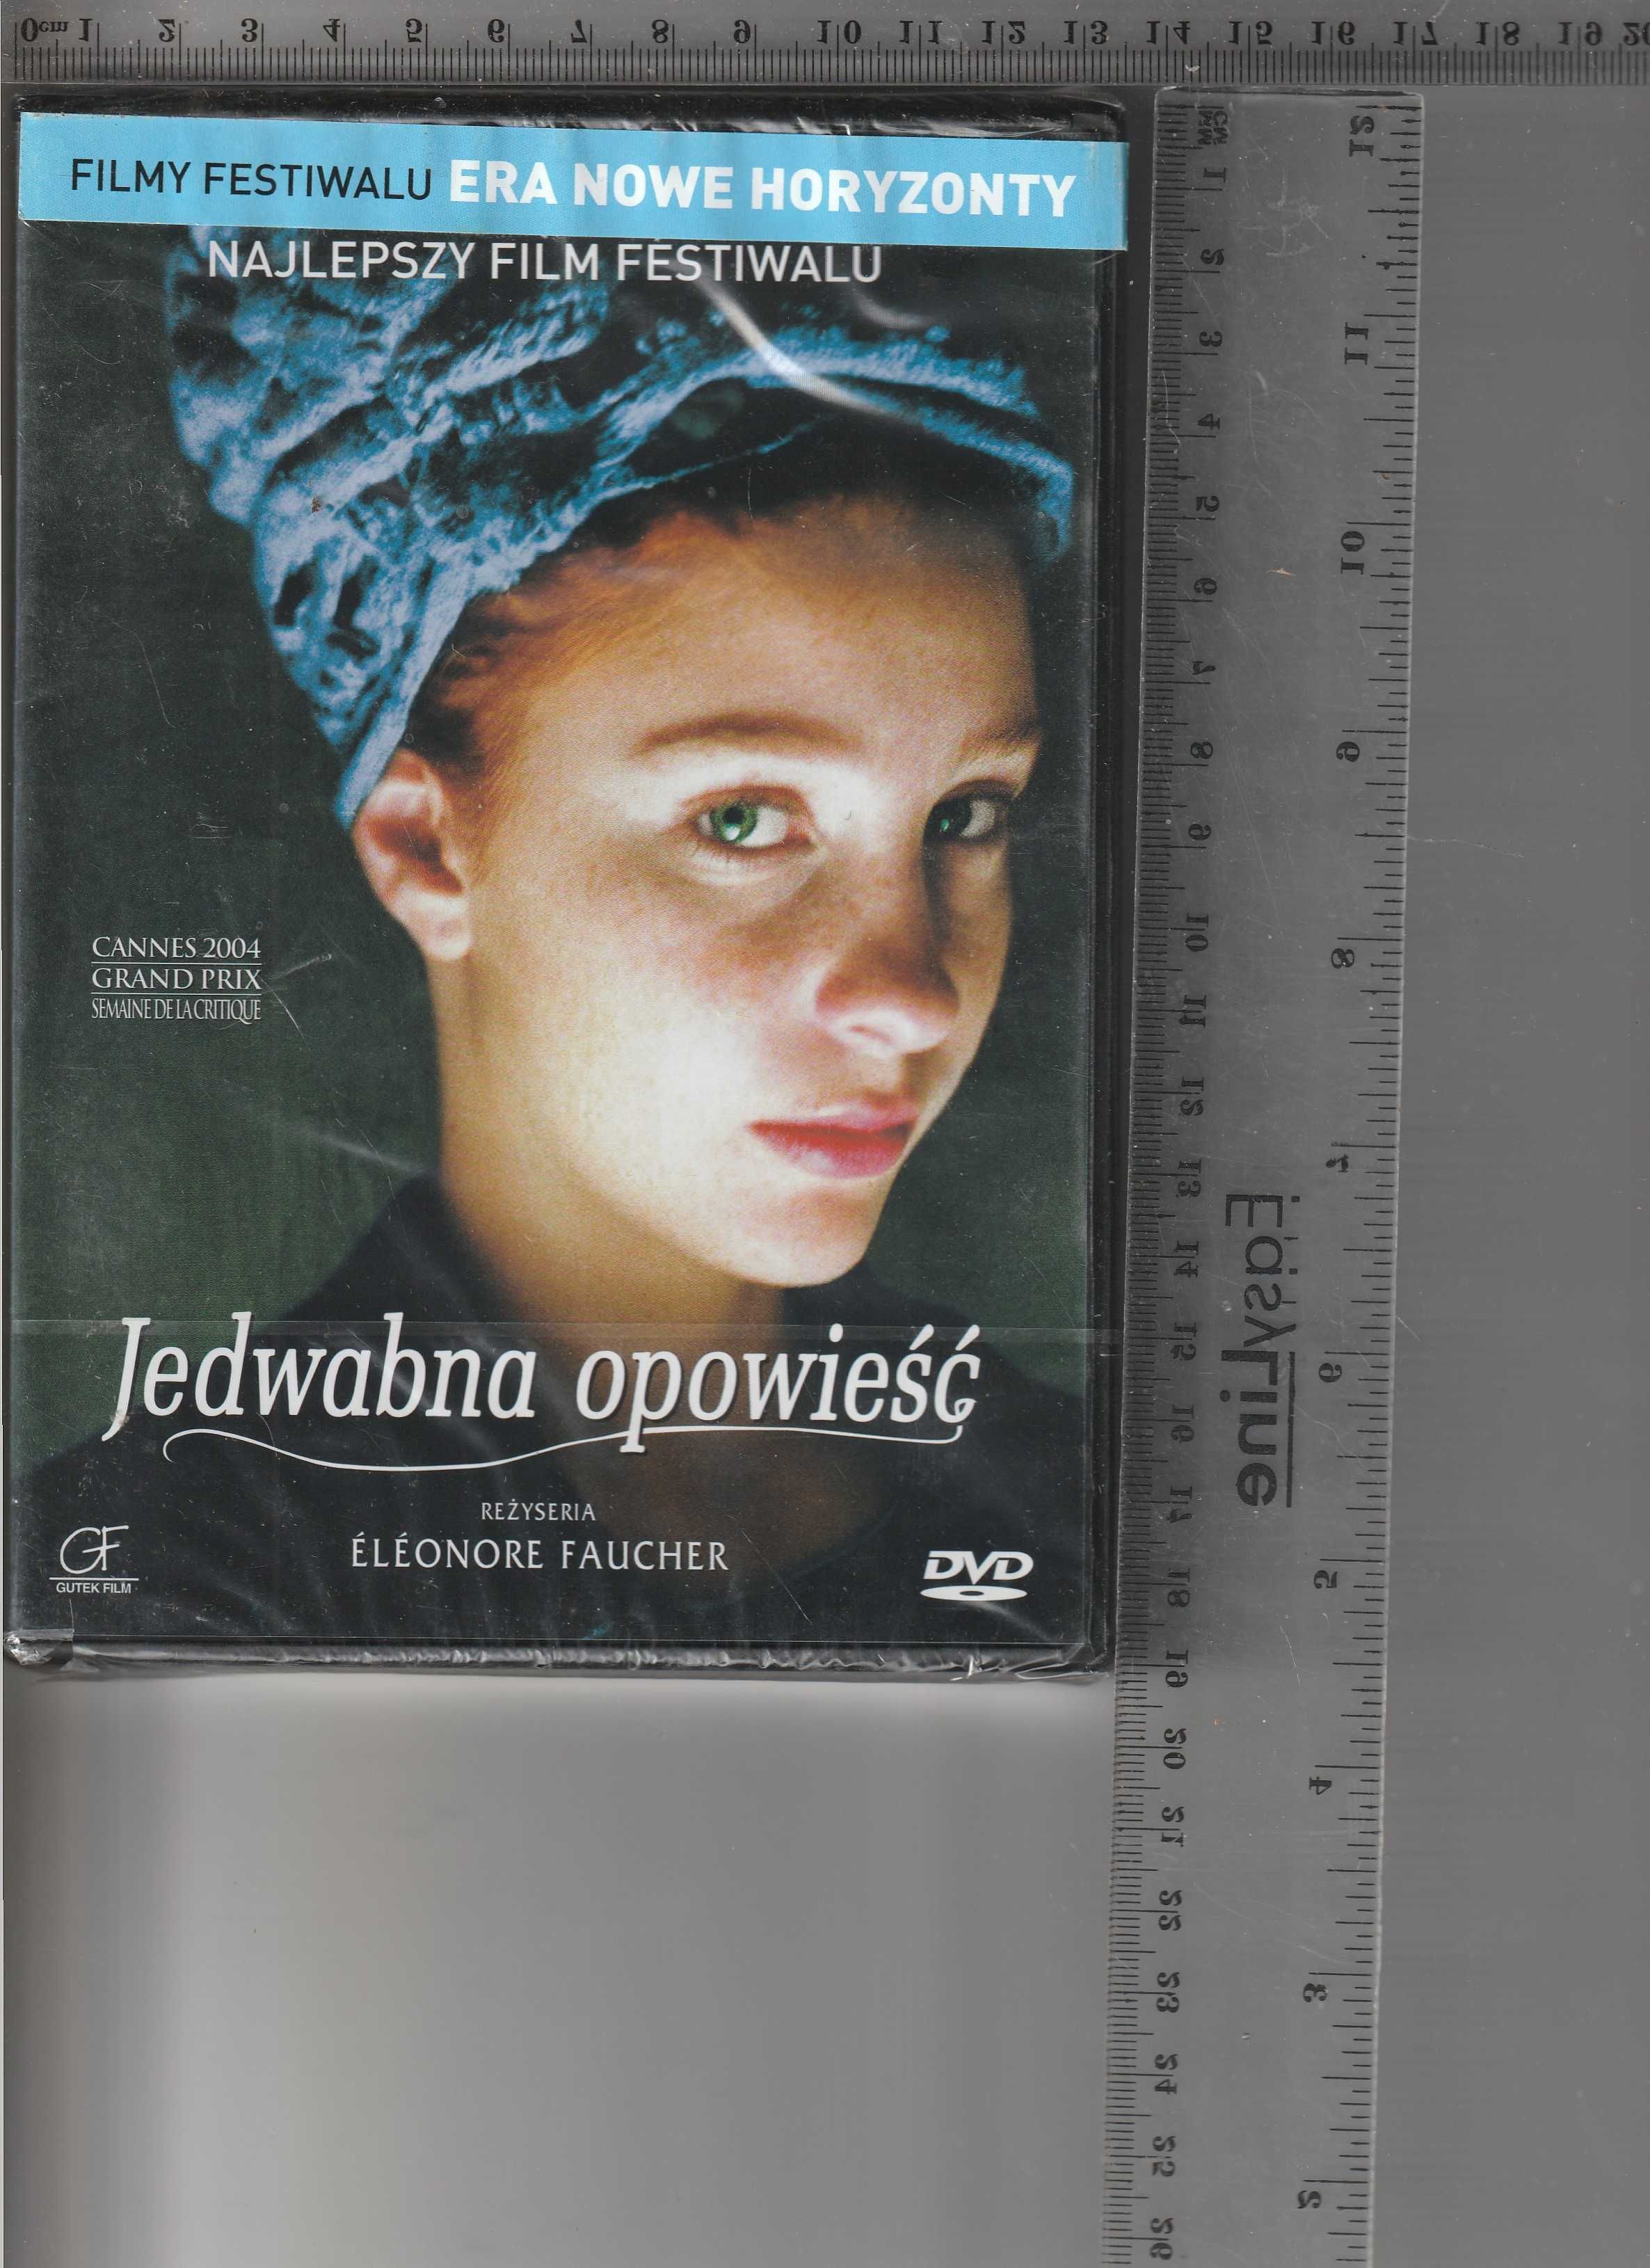 Jedwabna opowieść Eleonore Faucher DVD